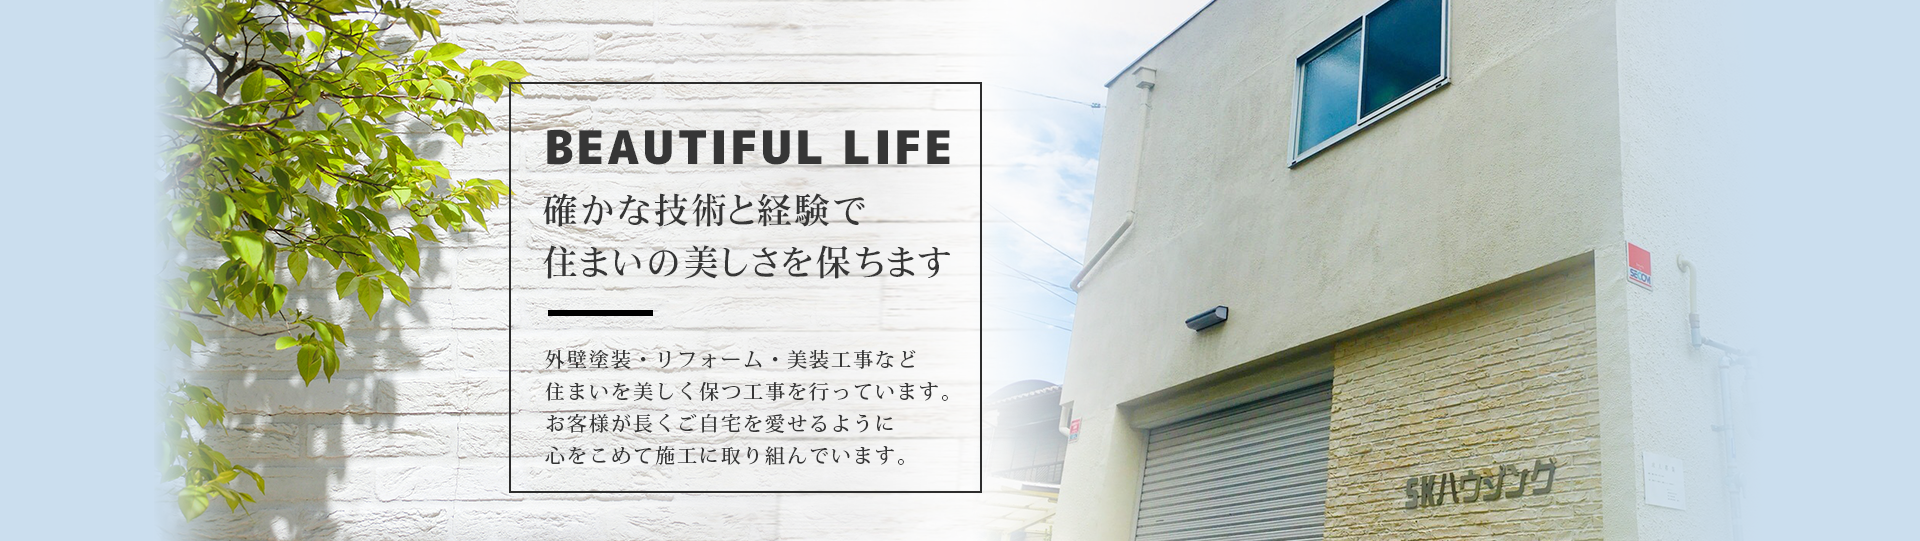 大阪市東住吉区のSKハウジング株式会社は外壁塗装、内装外装リフォーム全般を承っております。